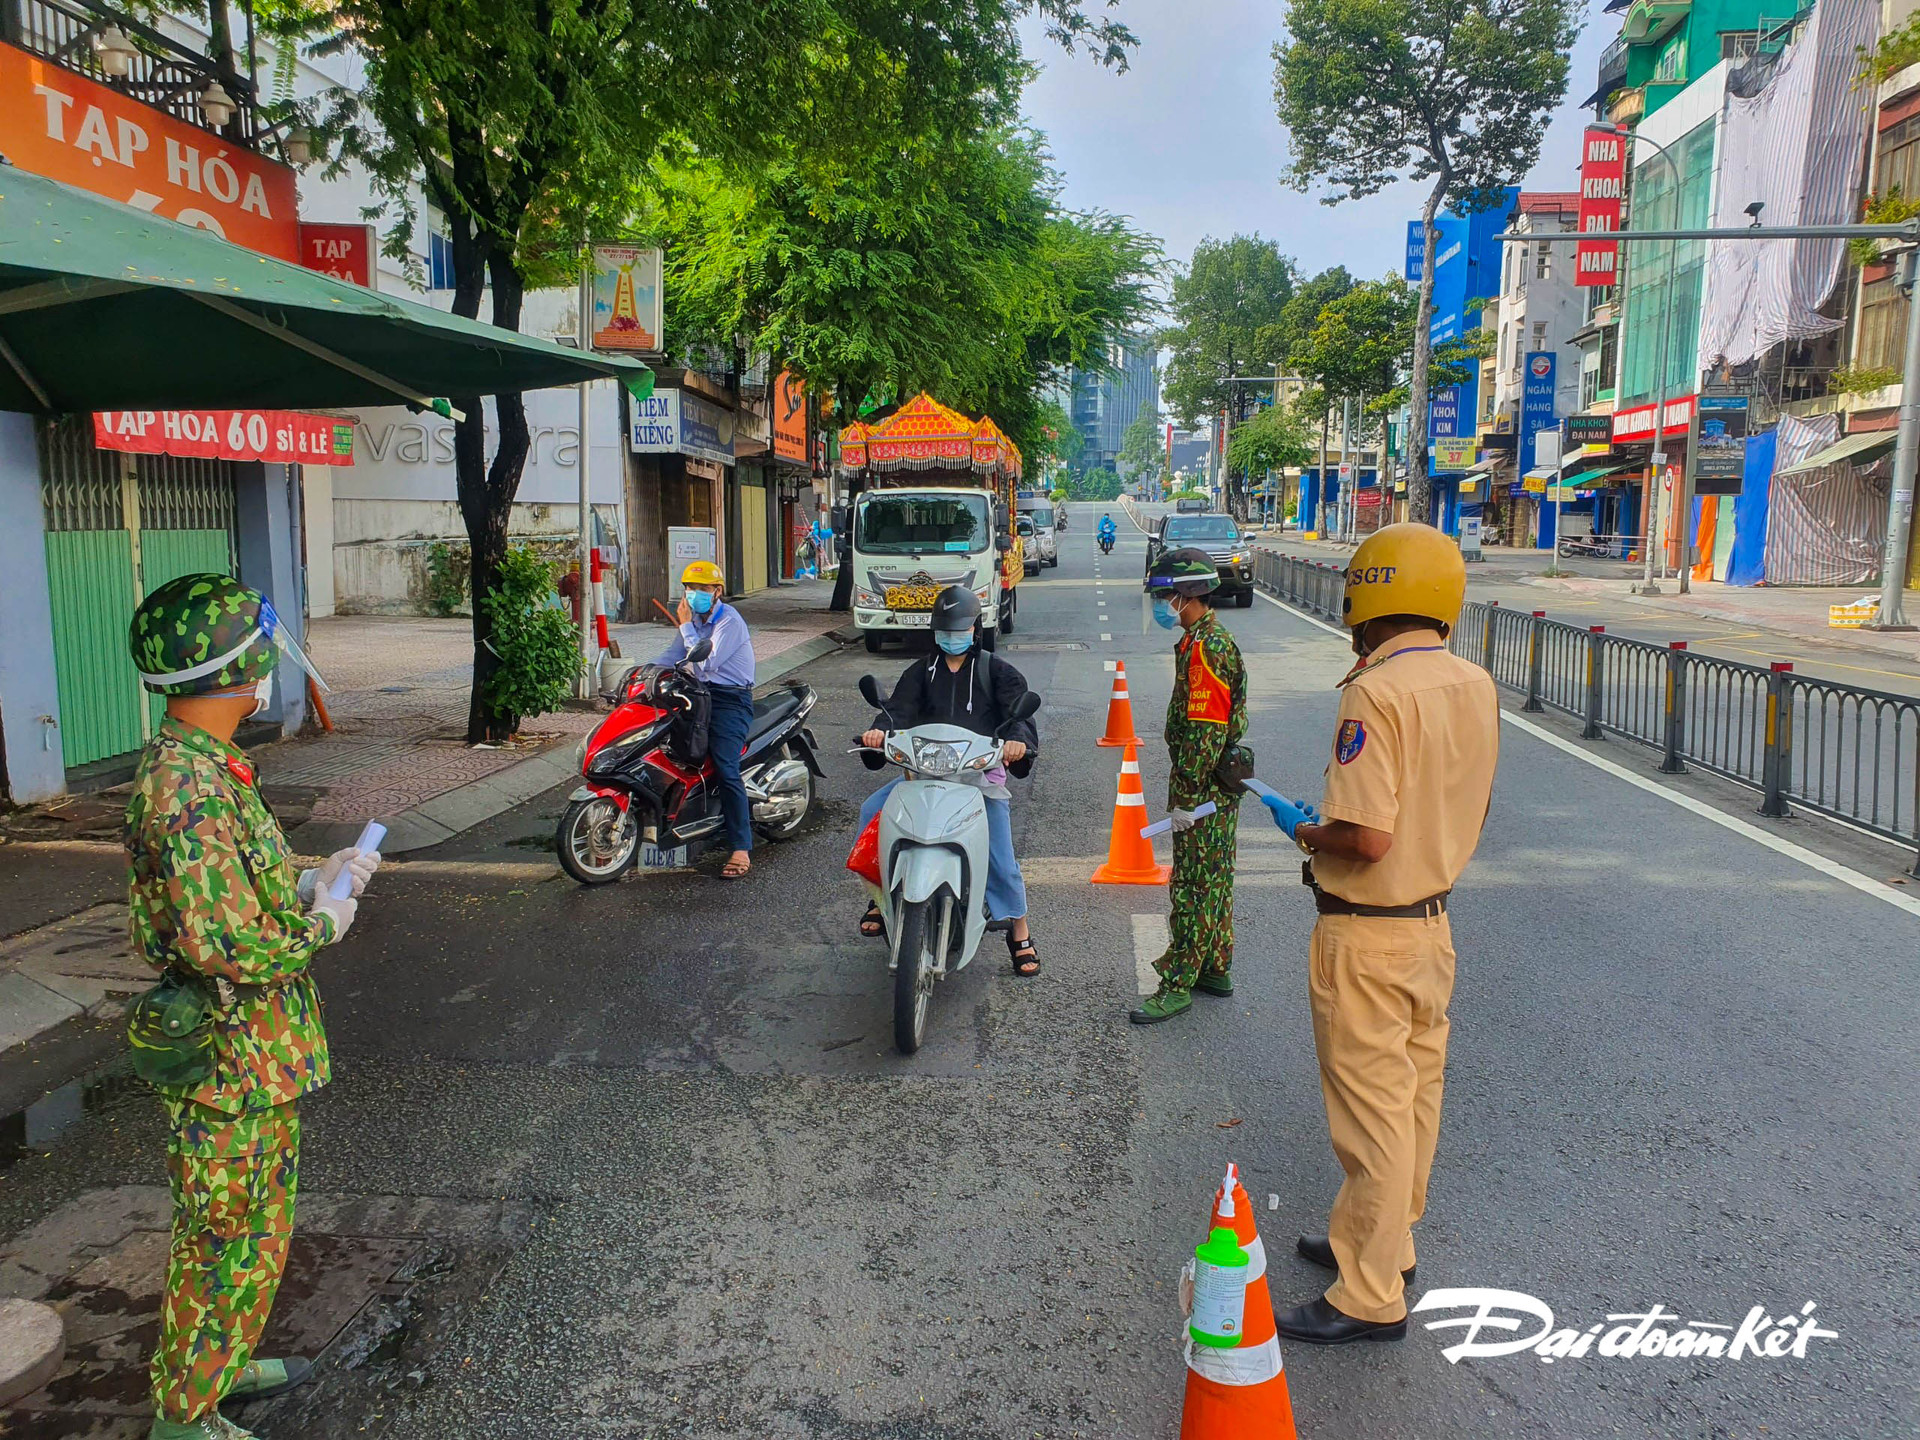 Tại chốt kiểm tra trên đường Lê Văn Duyệt (quận Bình Thạnh), các phương tiện đều đã khai báo sẵn trước đó, lực lượng sẽ tiến hành quét mã QR sau đó kiểm tra giấy đi đường và cho xe qua.